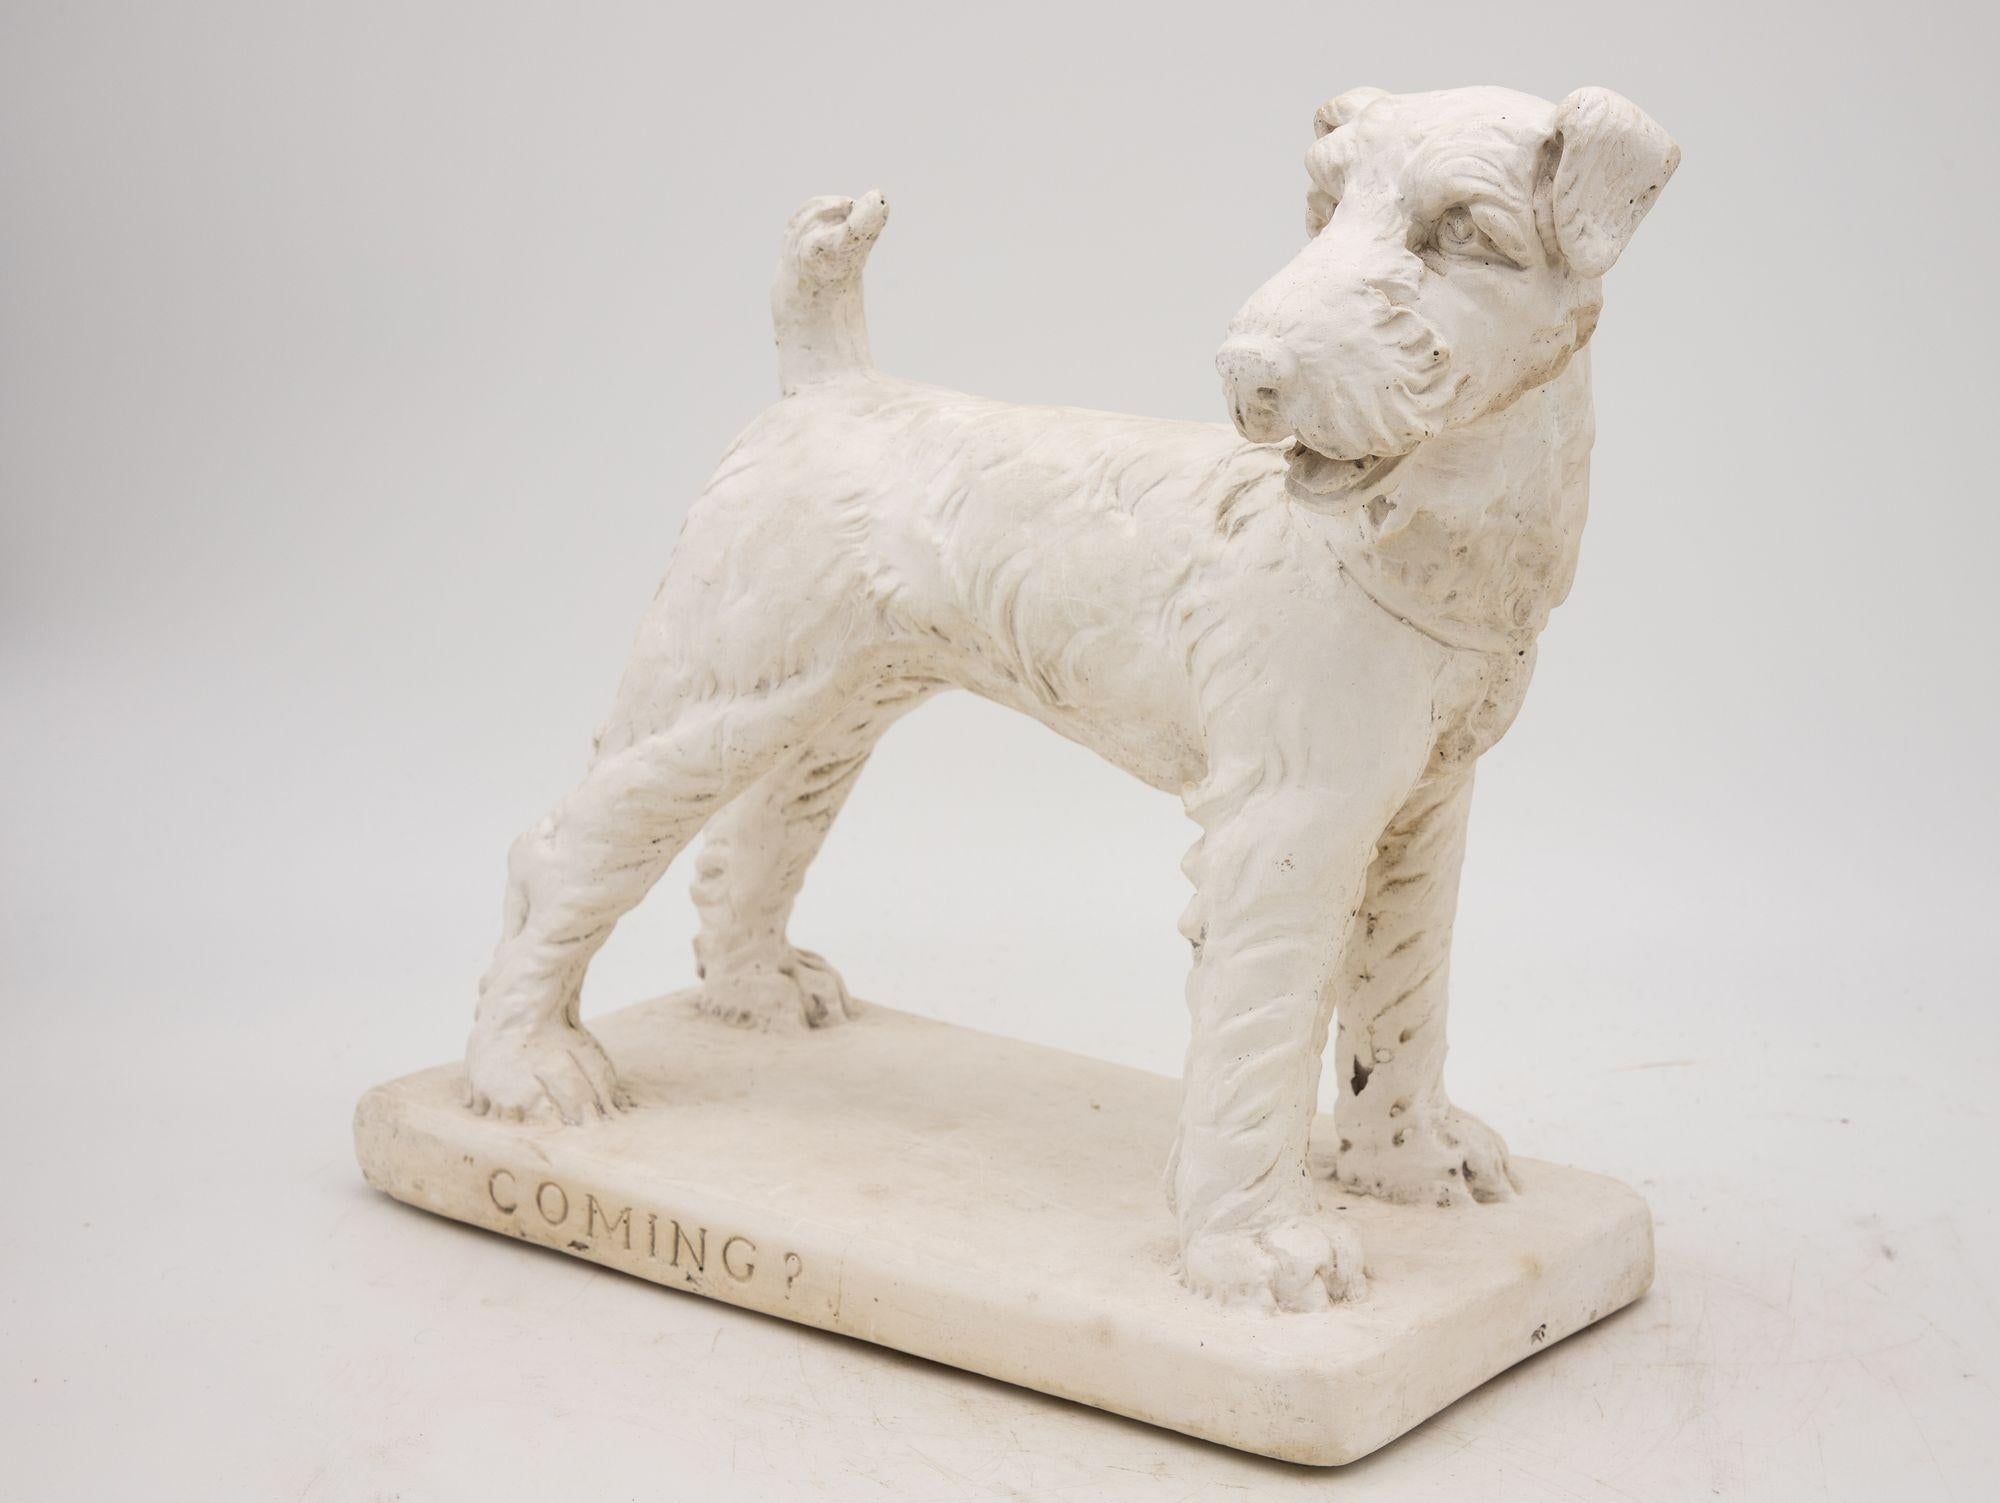 Délicieuse relique du XXe siècle, ce modèle de chien terrier en plâtre dégage un charme intemporel. Grâce à une attention particulière portée aux détails, les traits du terrier sont reproduits de façon magistrale, mettant en valeur l'art de